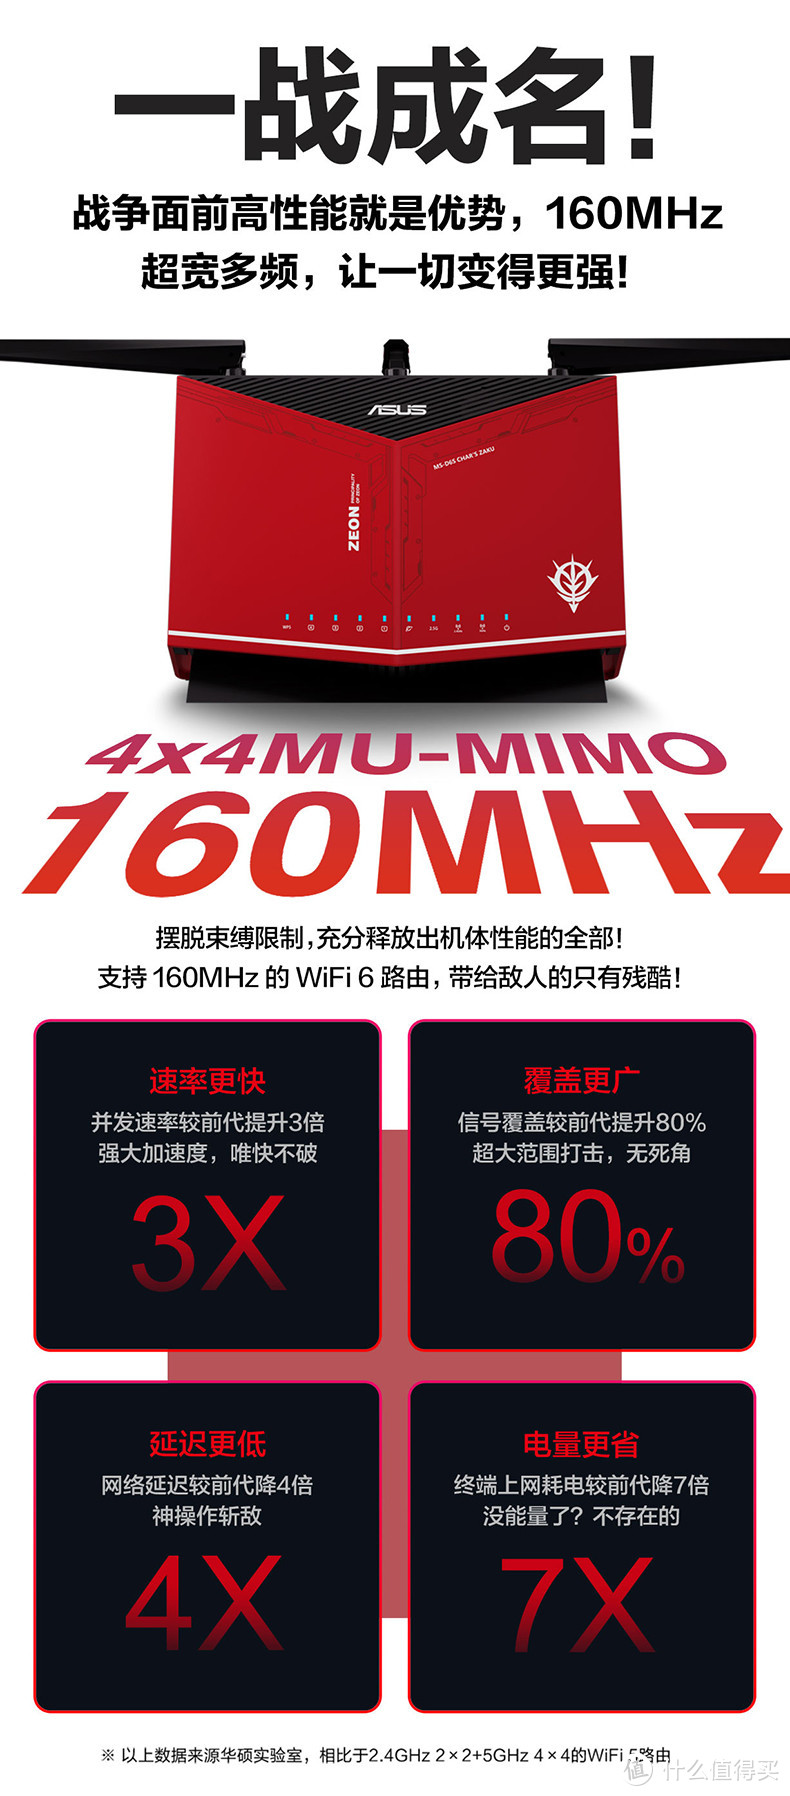 高达粉丝的礼物：华硕RT-AX86U“机动战士高达版”上架限量预售